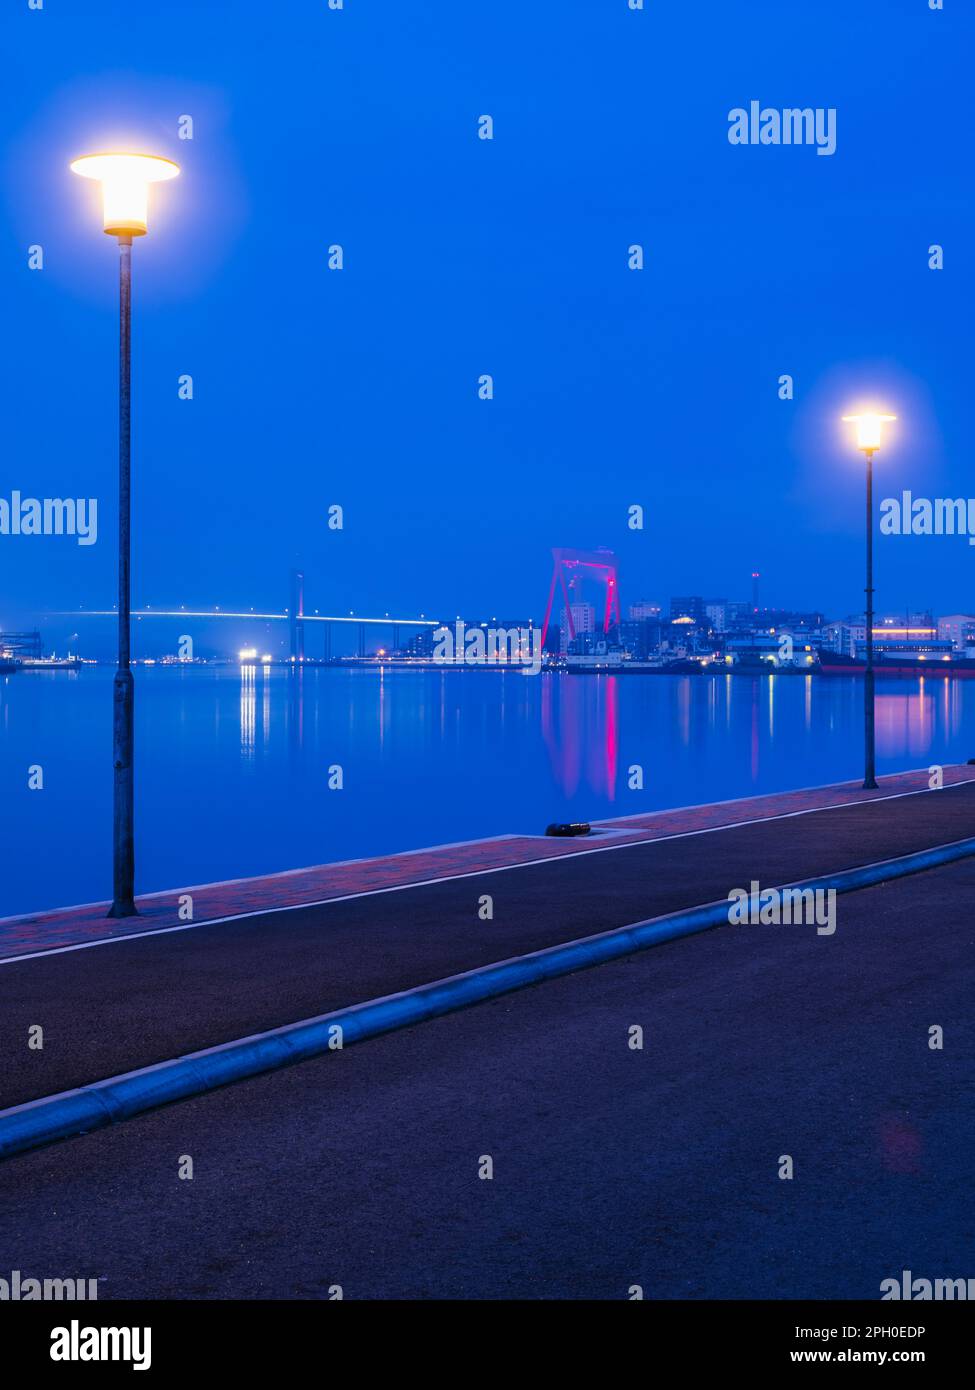 Lámparas iluminadas alinean el horizonte de Gotemburgo, Suecia al atardecer, creando una reflexión sobre su río e iluminando las estructuras construidas en esta ciudad Foto de stock